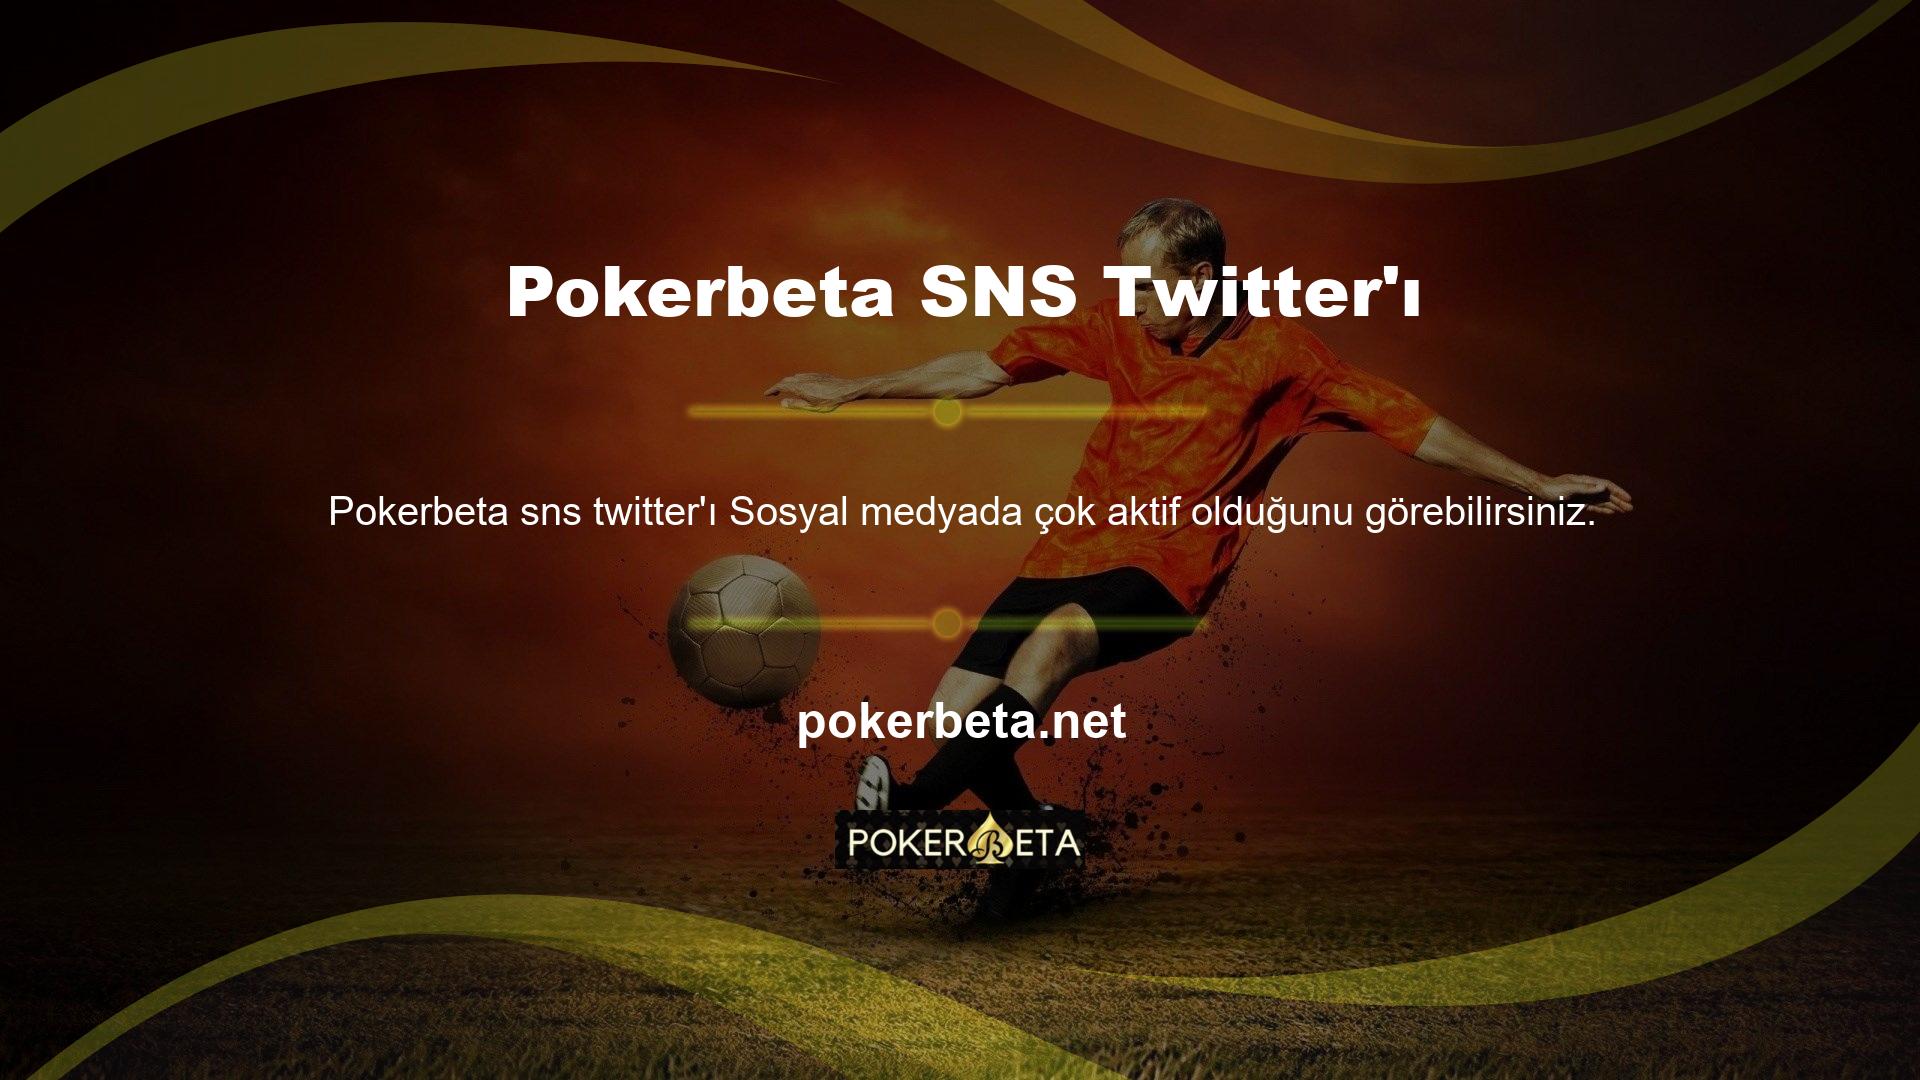 Sitede yer alan buton ile Pokerbeta giriş seçeneği ile girilen site, Avrupa'nın önemli oyun siteleriyle rekabet ettikten sonra hızlı ve güvenilir bir şekilde Türk oyun pazarına girmiştir